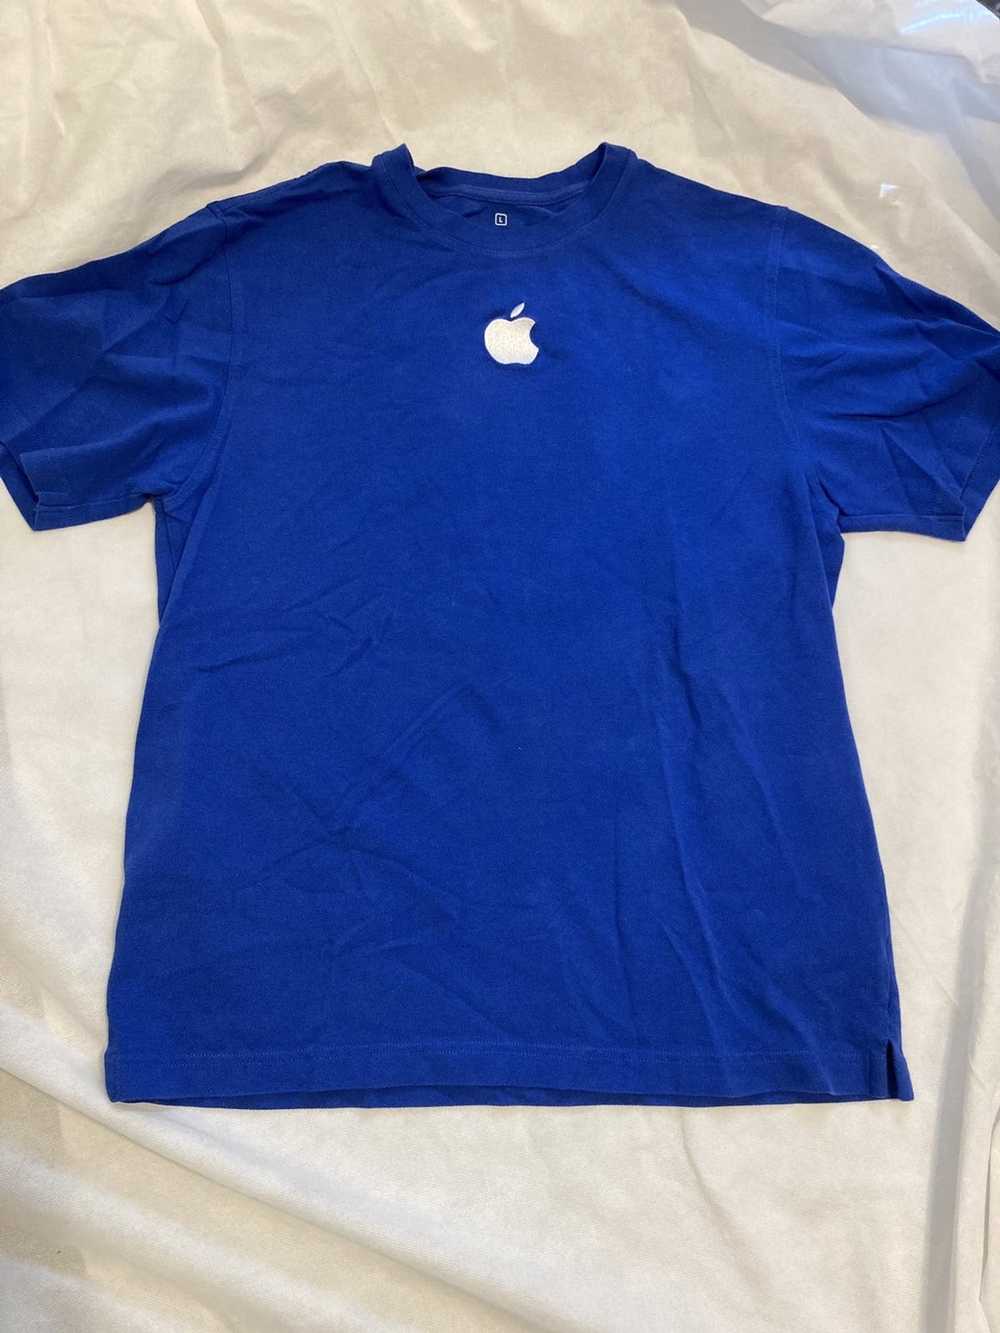 Apple × Vintage VTG Y2K Apple employee shirt - image 1